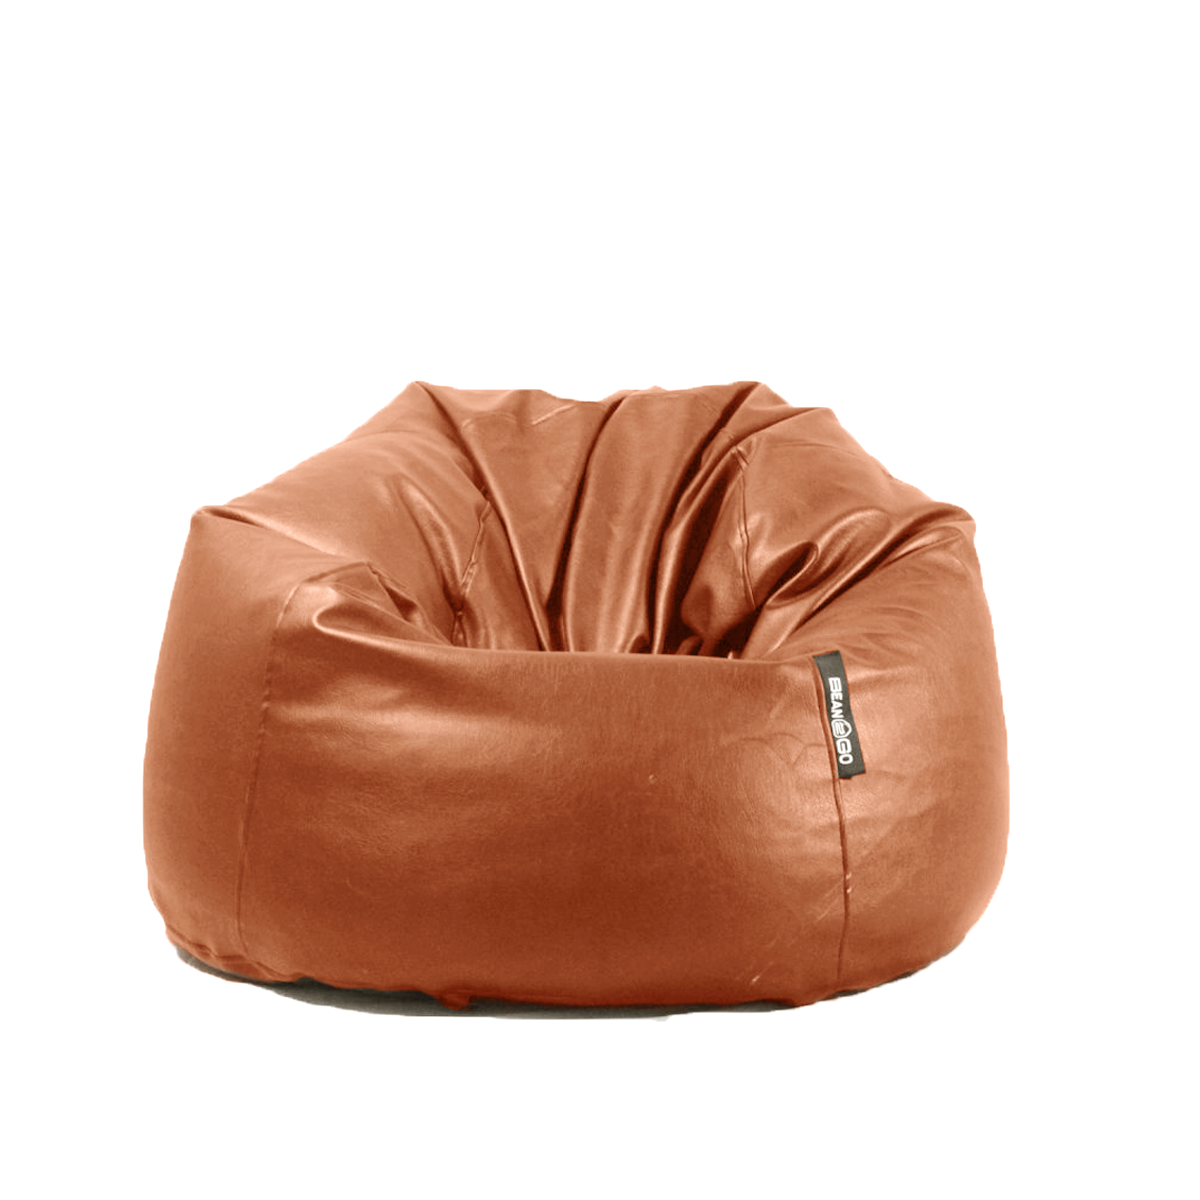 6223008411393 - Giant Leather Beanbag 115 x 90 cm by bean2go